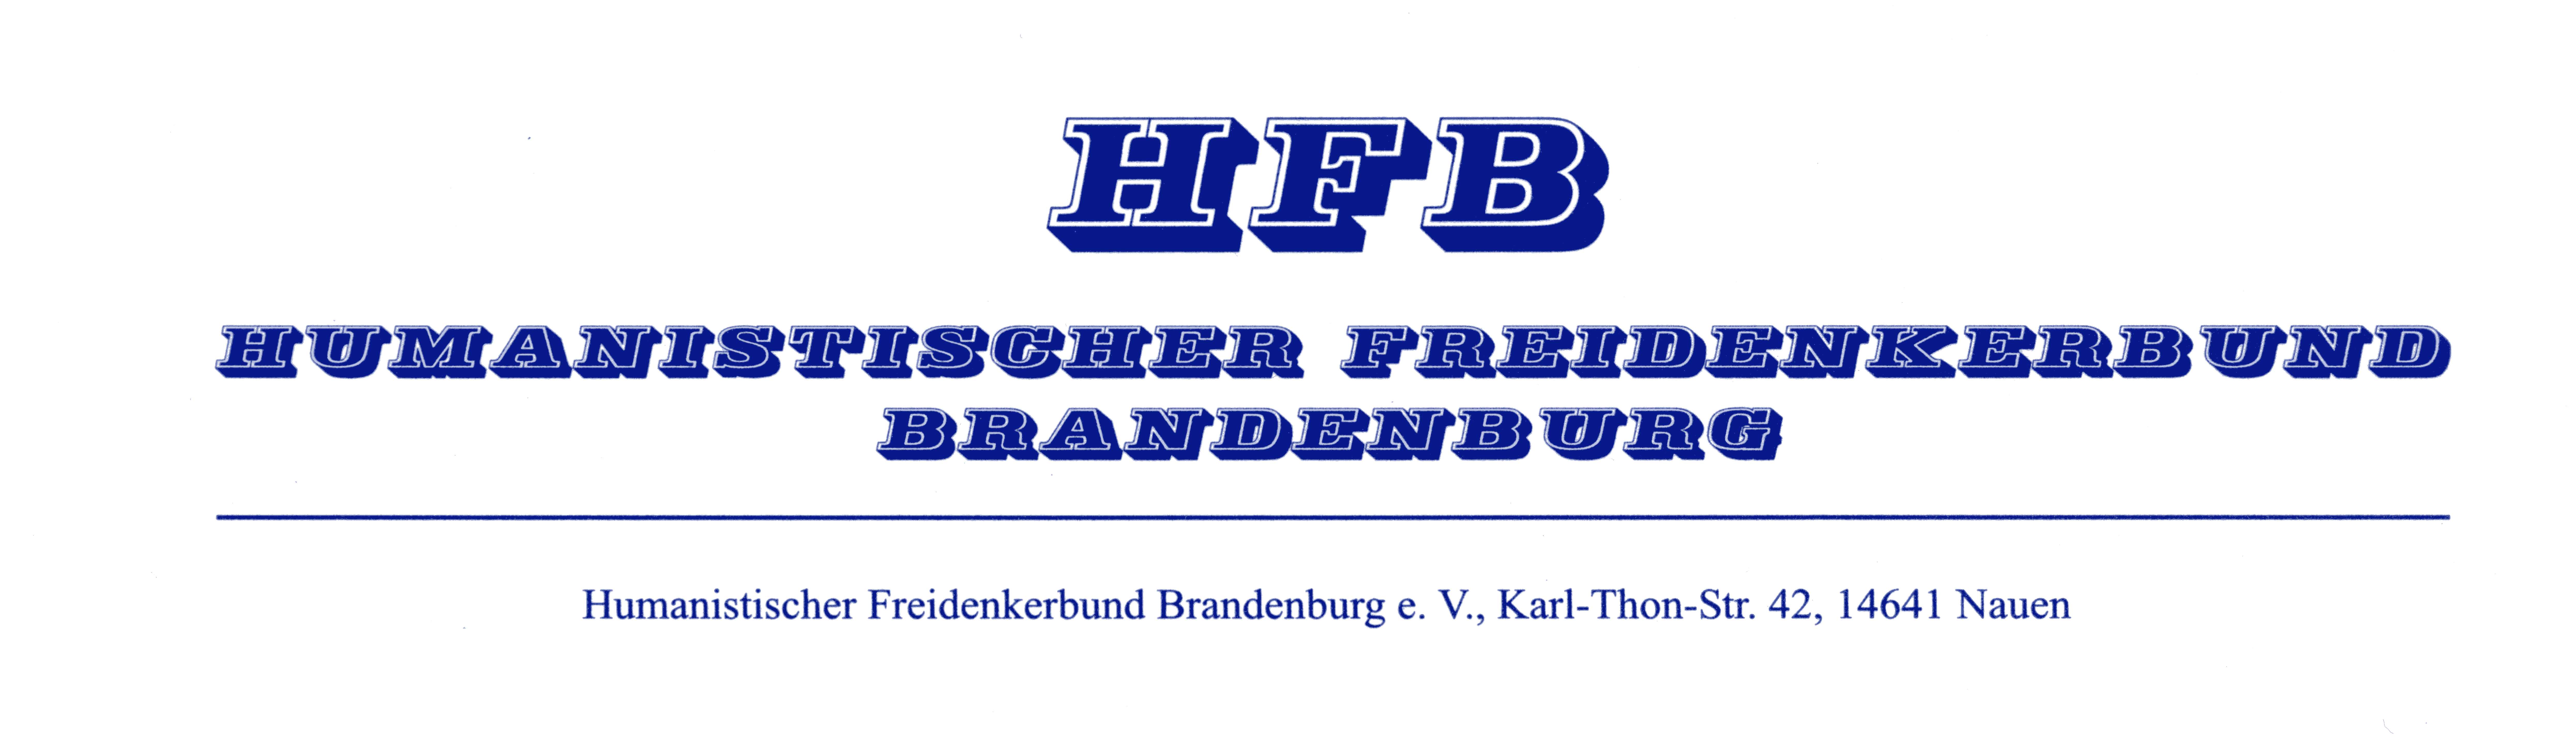 Humanistischer Freidenkerbund Brandenburg e.V.